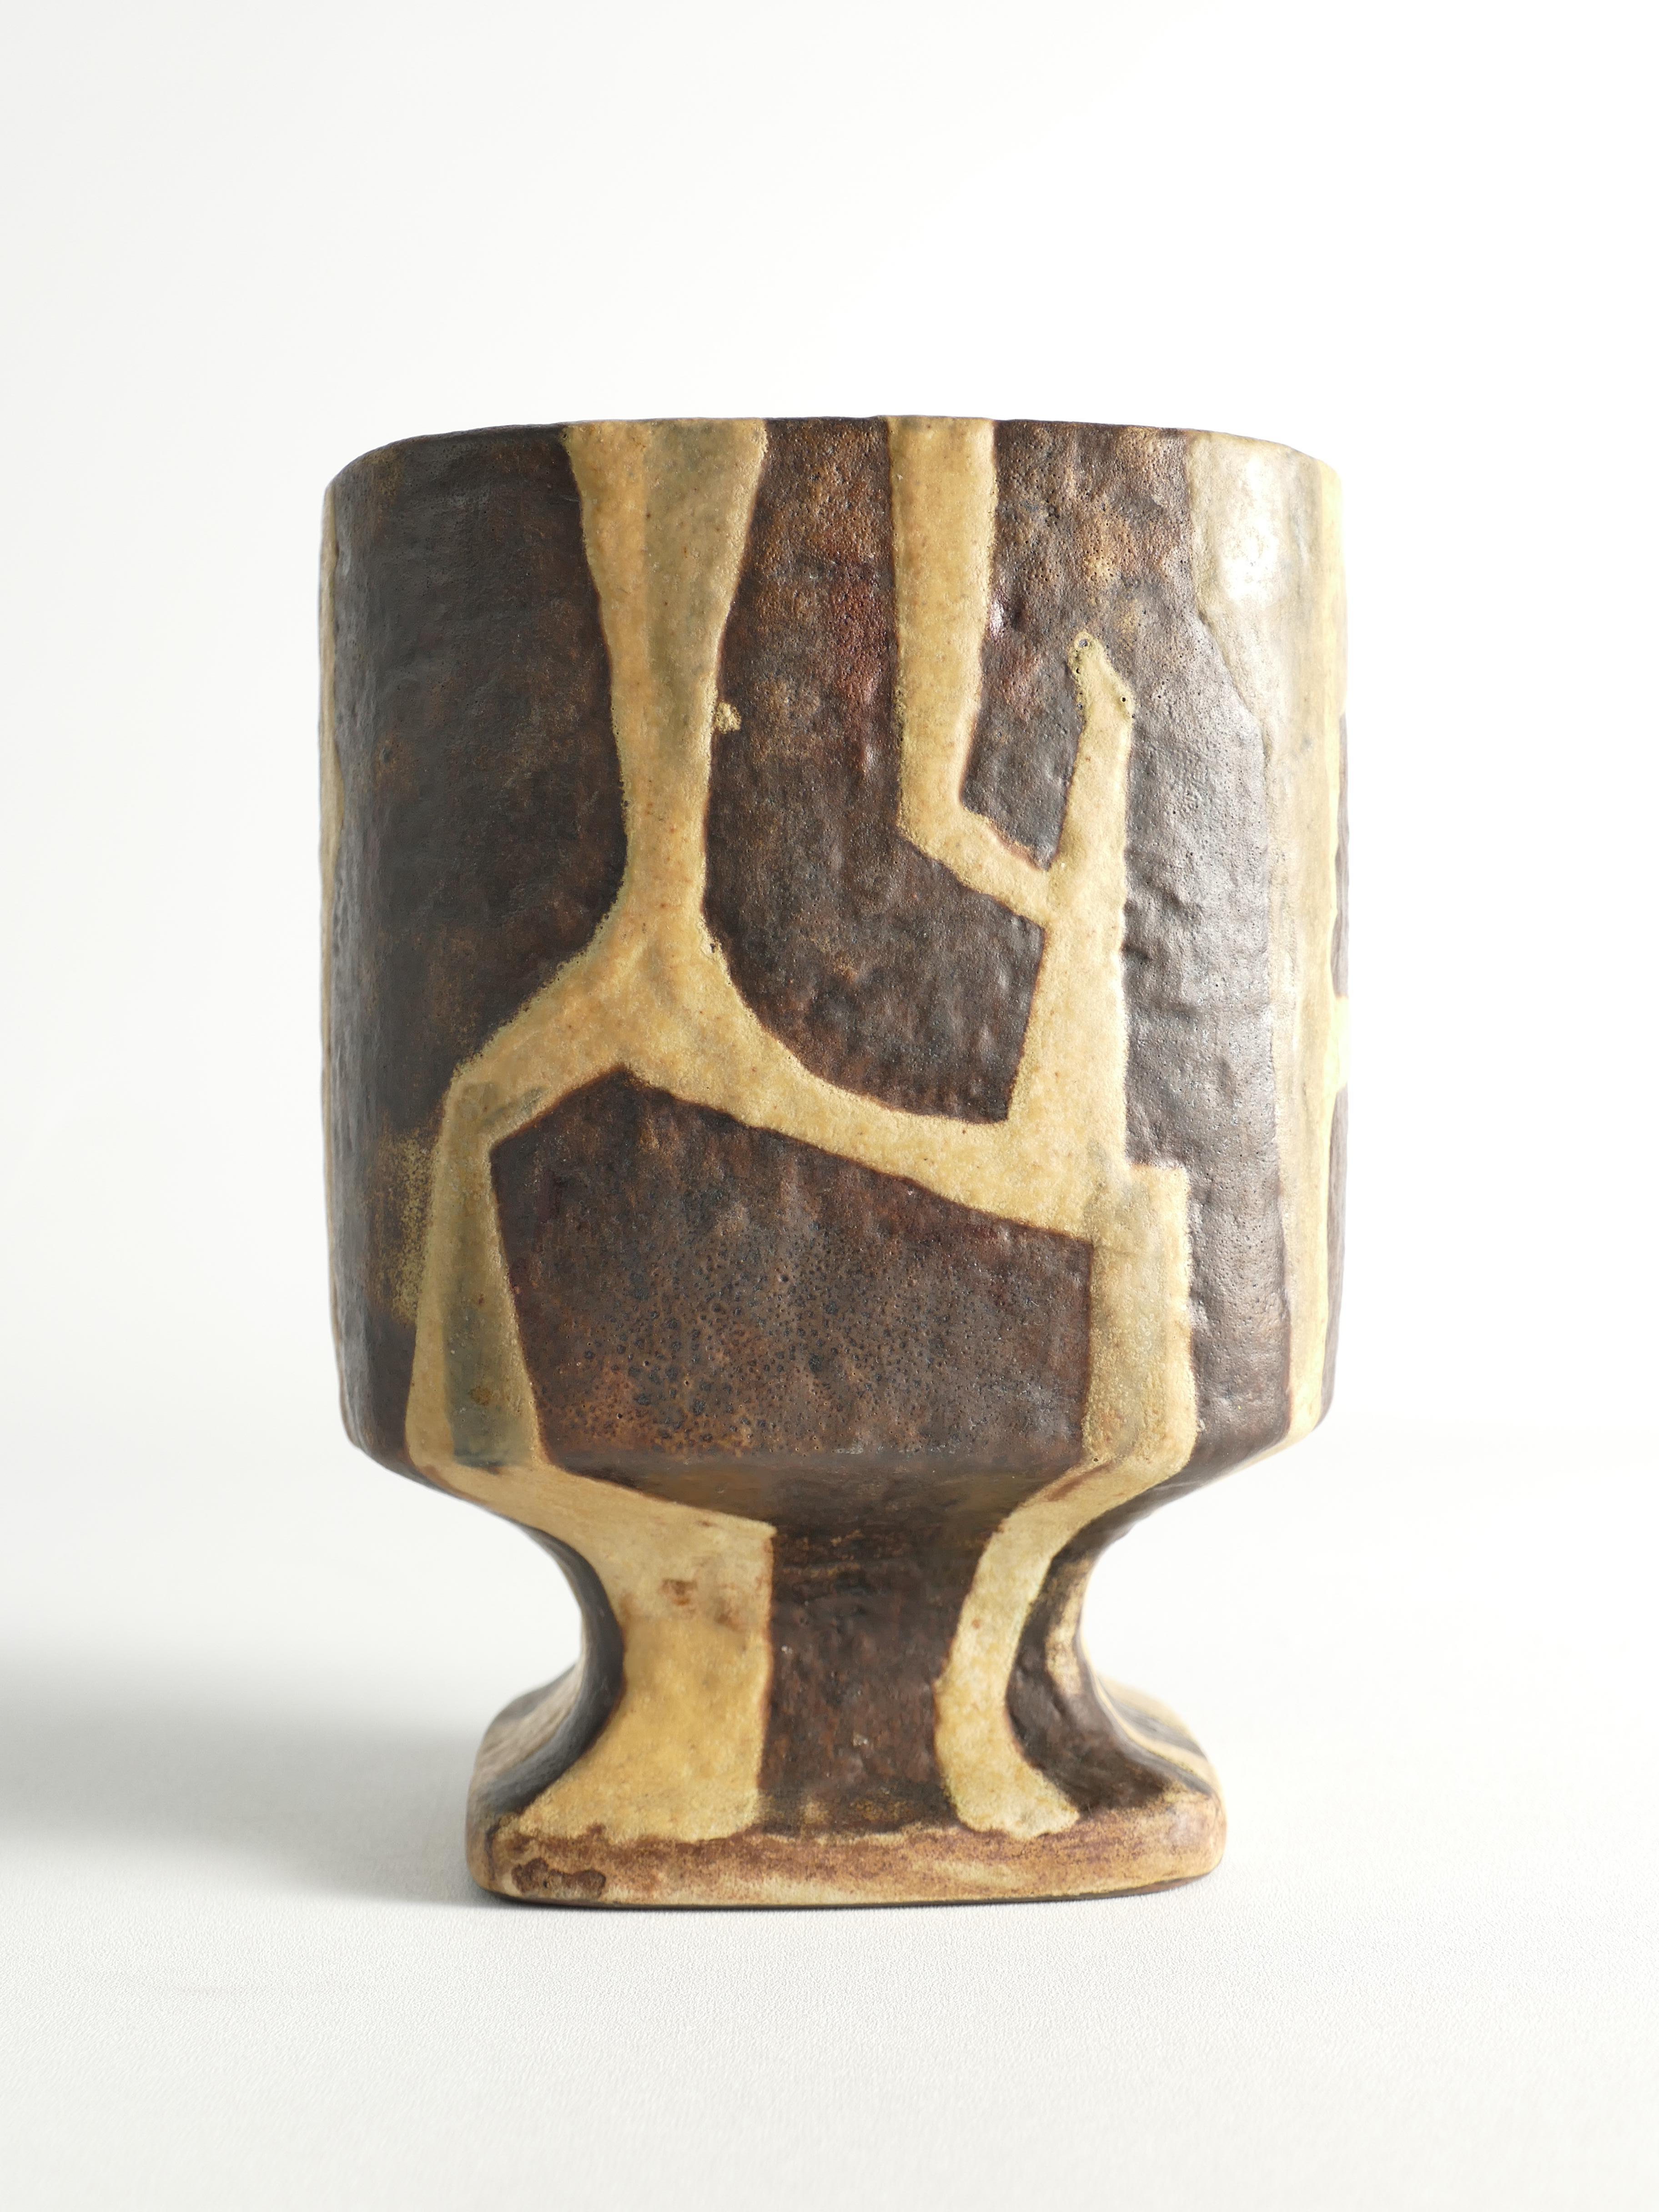 Es handelt sich um eine seltene Keramikvase aus der Staatlichen Majolika Manufaktur Karlsruhe, auch bekannt als Karlsruher Majolika. Die Vase ist ein Entwurf von Fridegart Glatzle, einem bedeutenden Designer der Nachkriegszeit. Die Vase hat ein